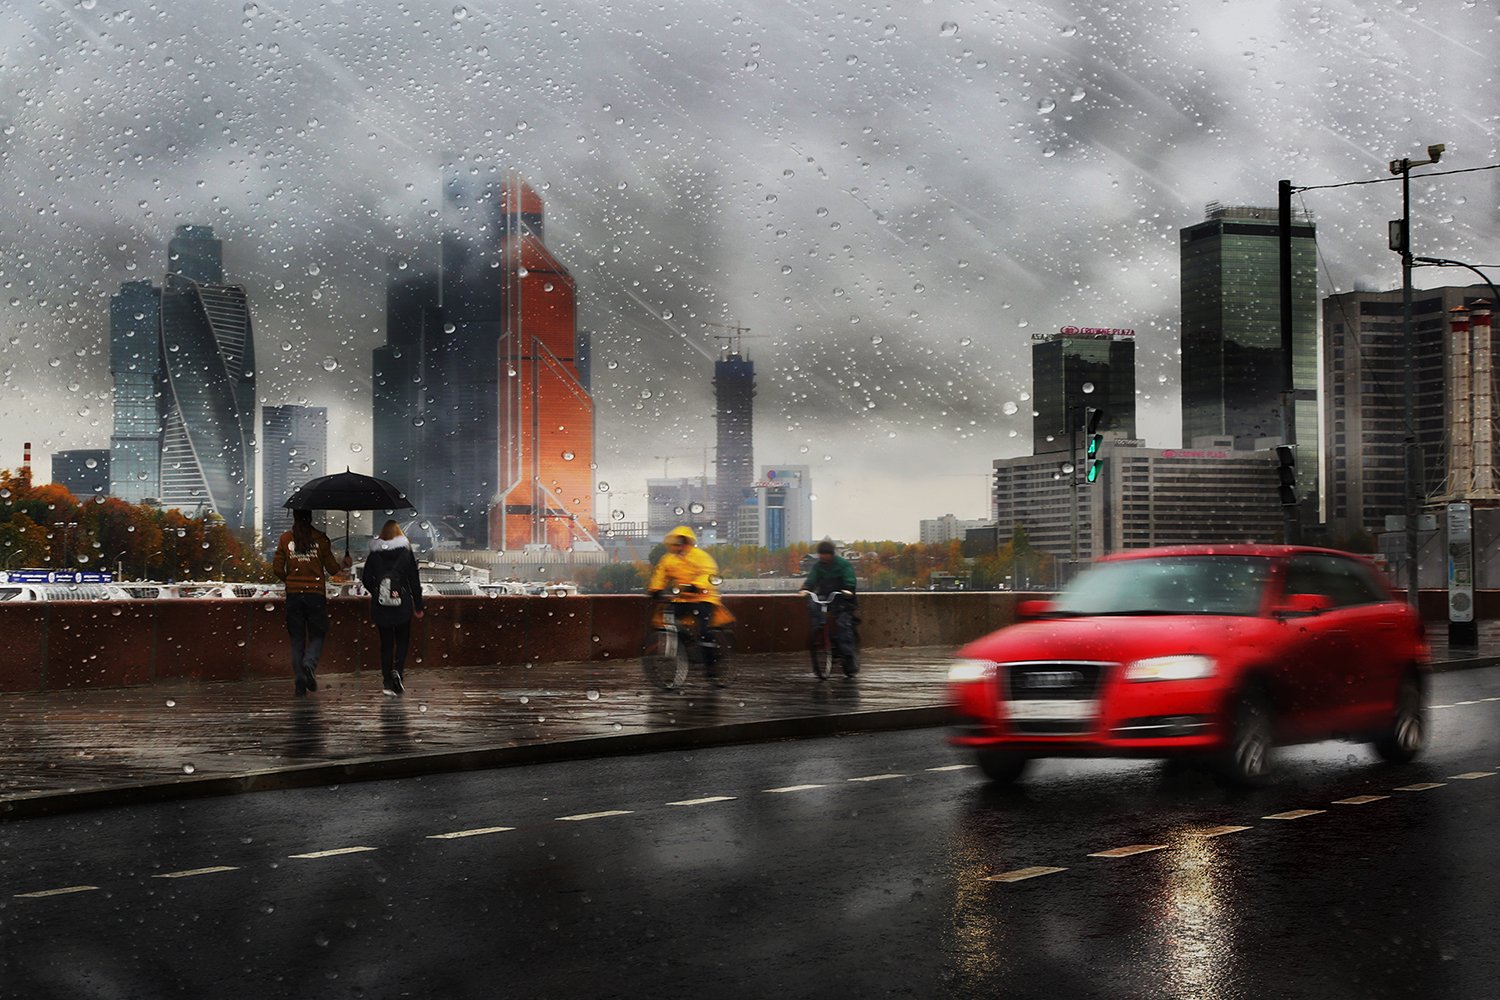 дождь, капли, машина, трасса, дорога, москва, зонт, скорость, двидение, асфальт, город, осень, ALLA SOKOLOVA